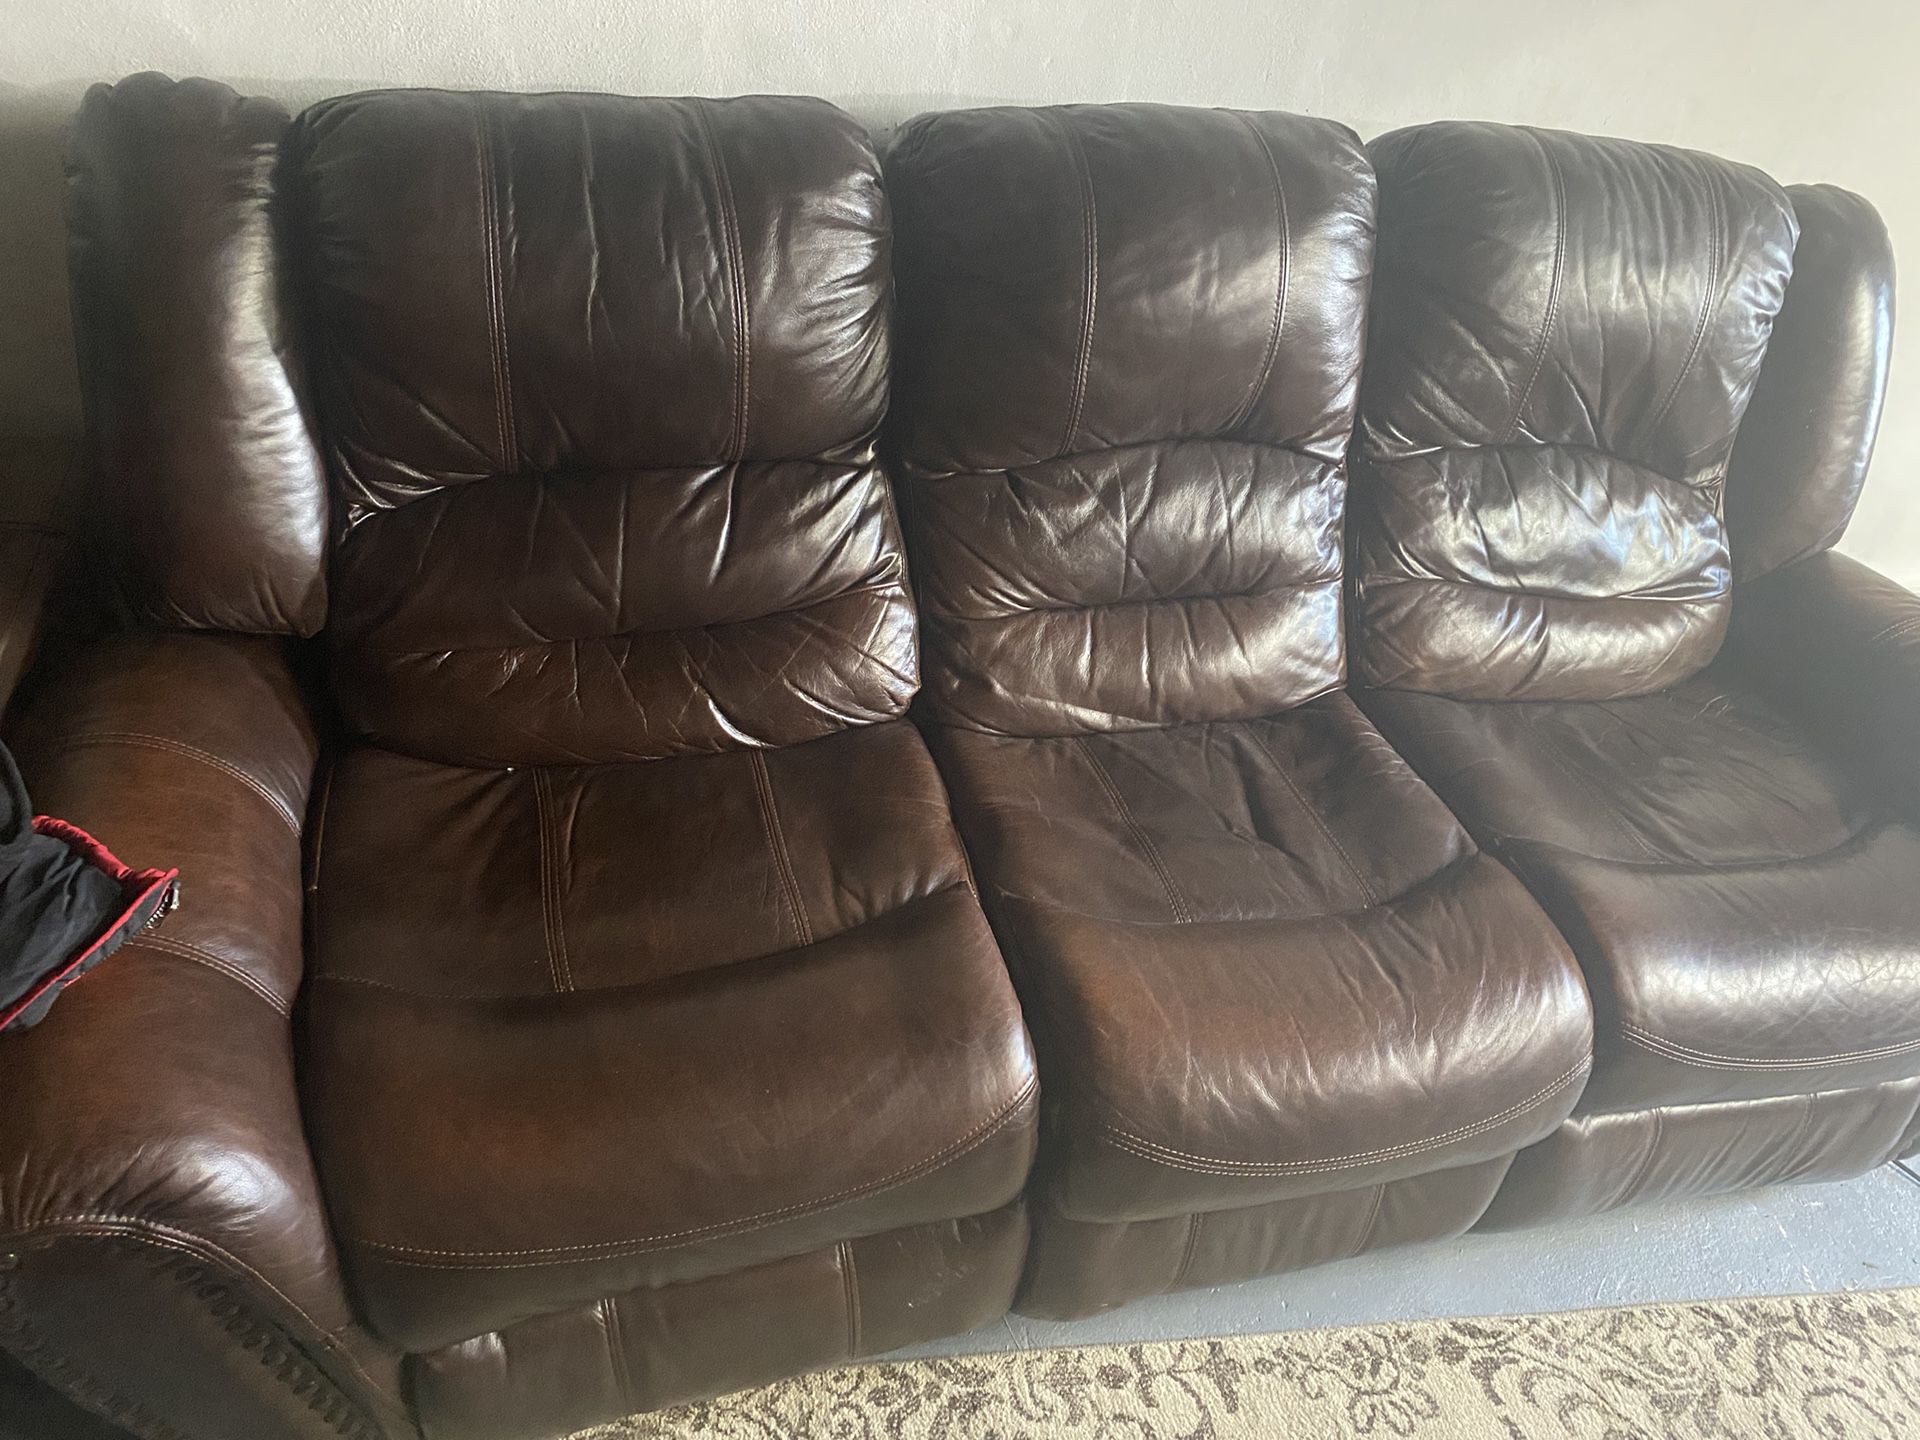 Brown Sofa Recliner 